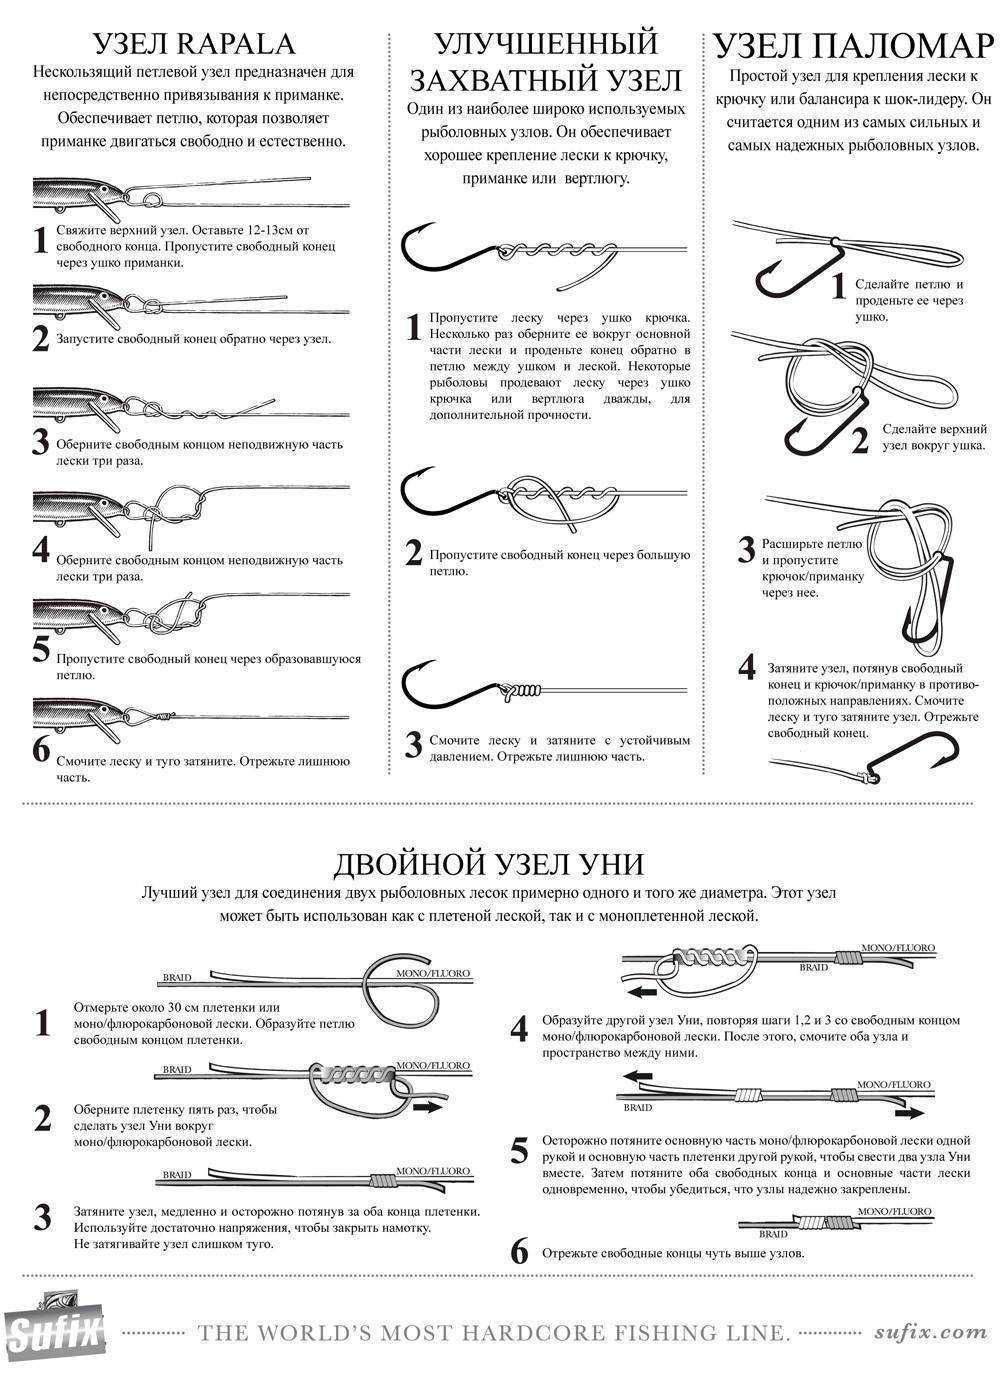 28 крепких узлов для крючков и поводков